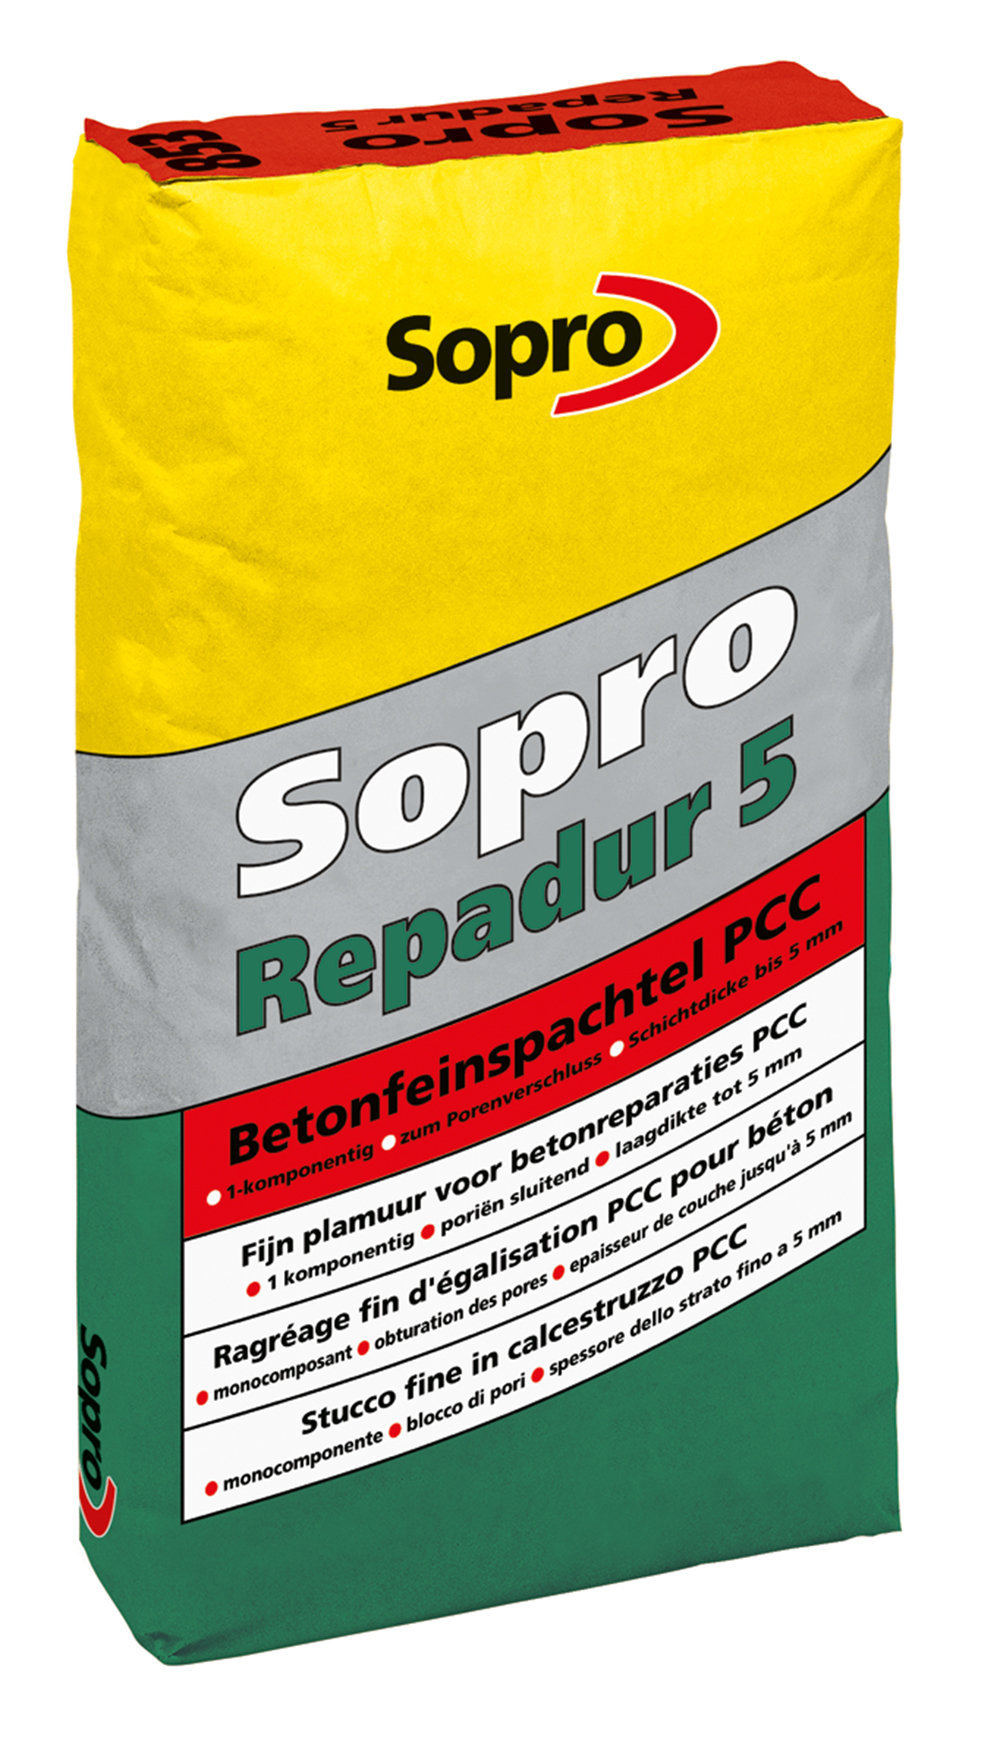 Sopro Repadur 5 Betonfeinspachtel PCC